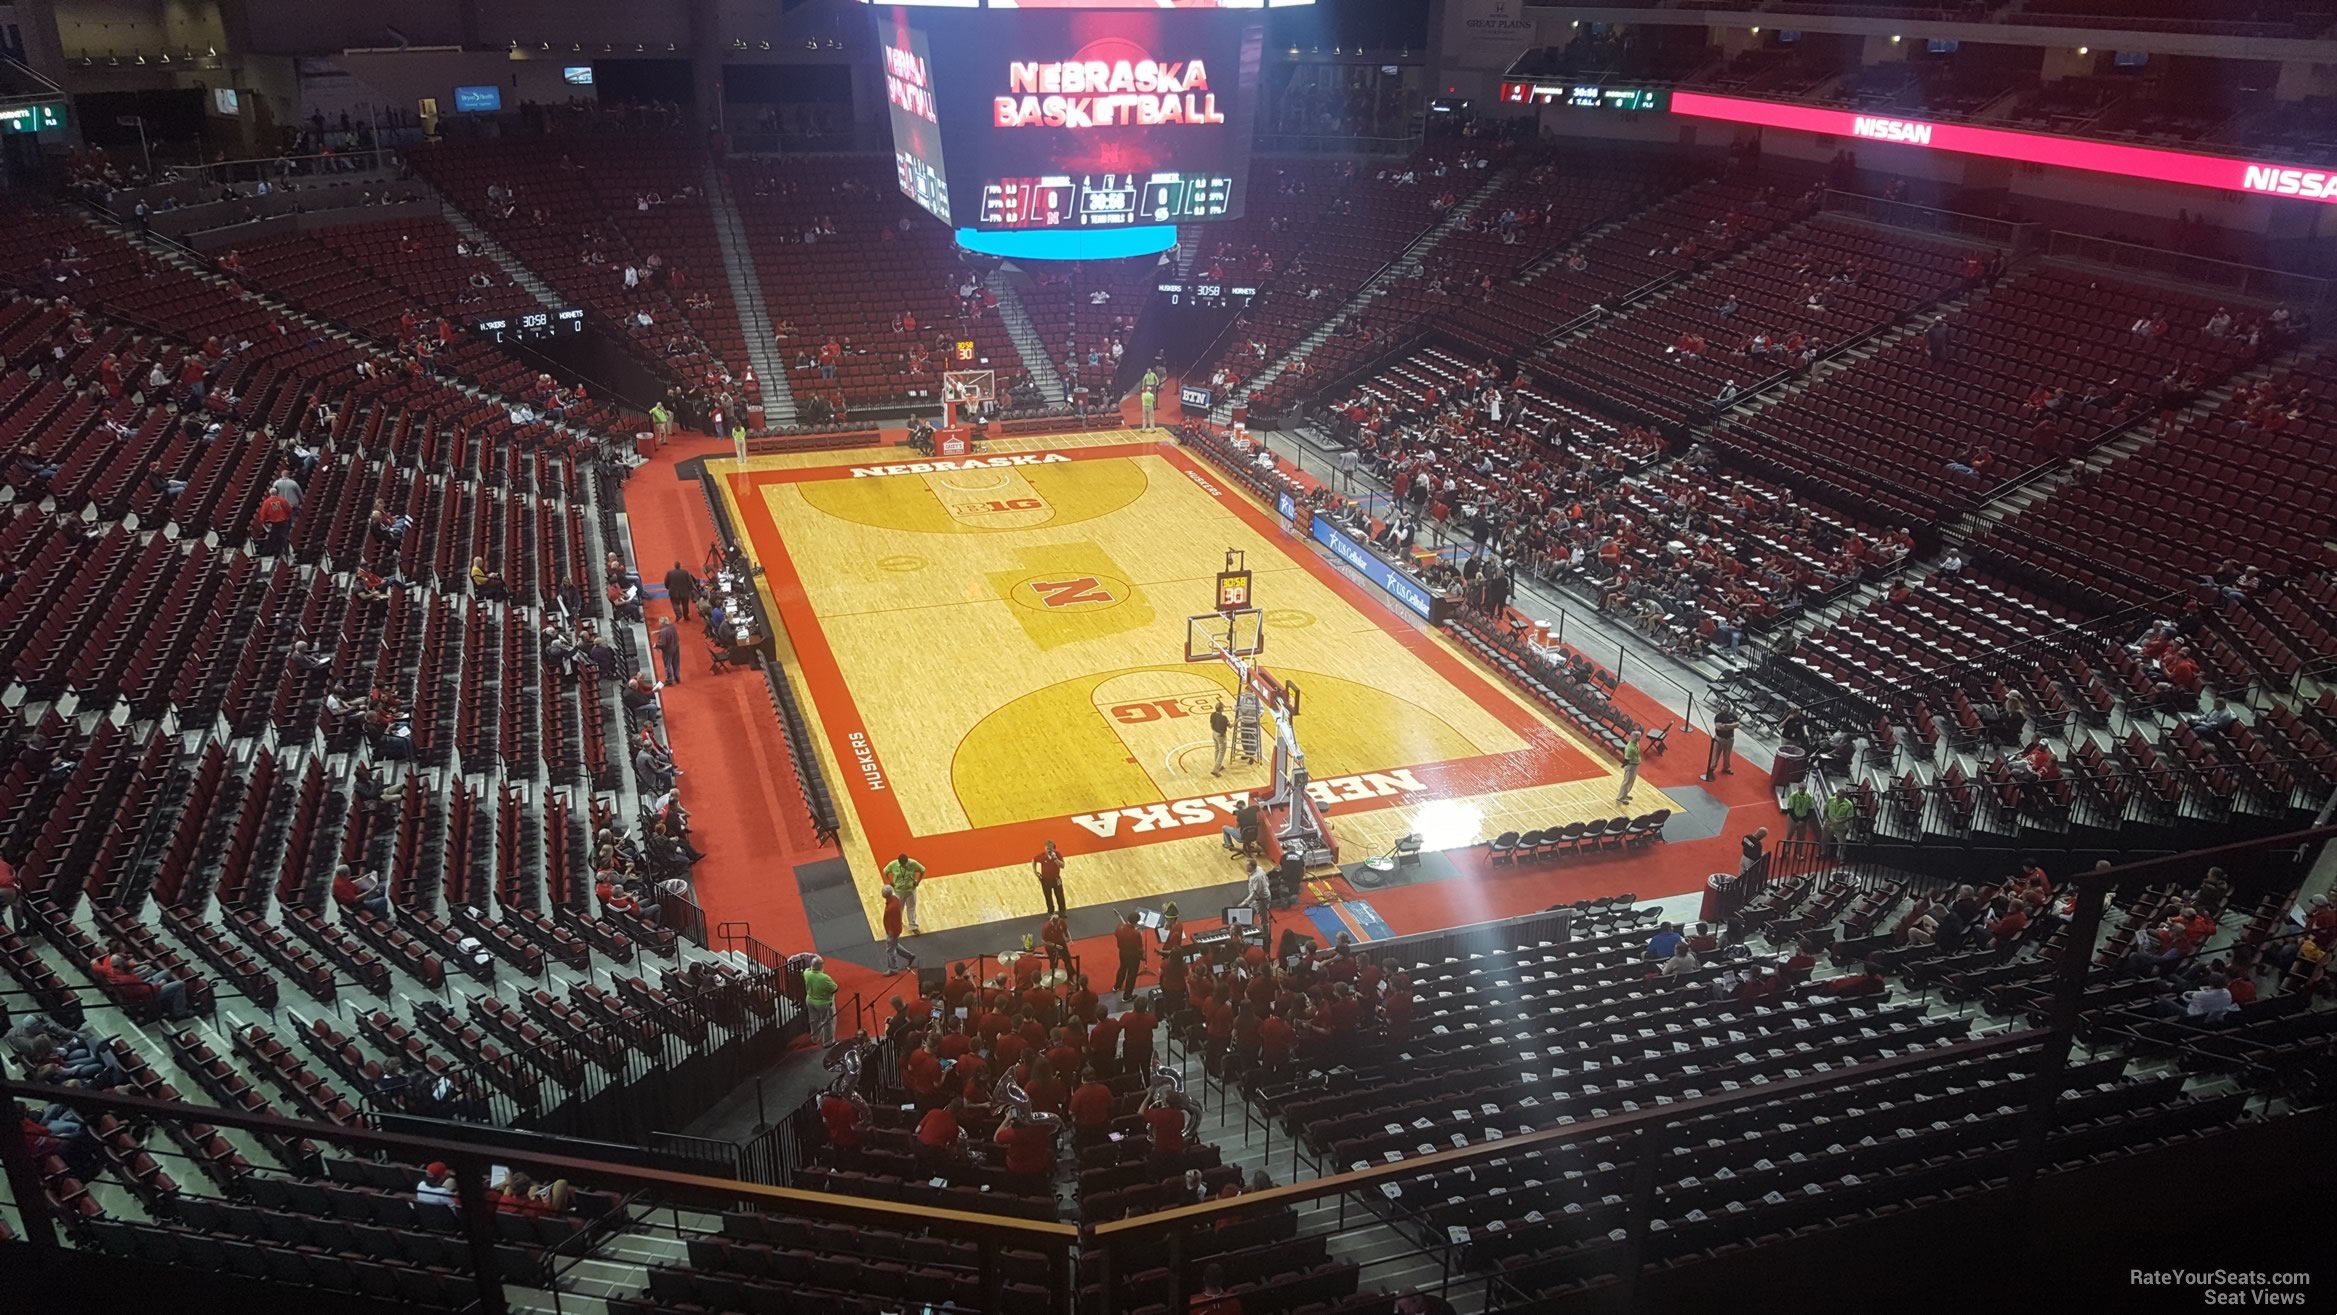 Section 213 at Pinnacle Bank Arena Nebraska Basketball